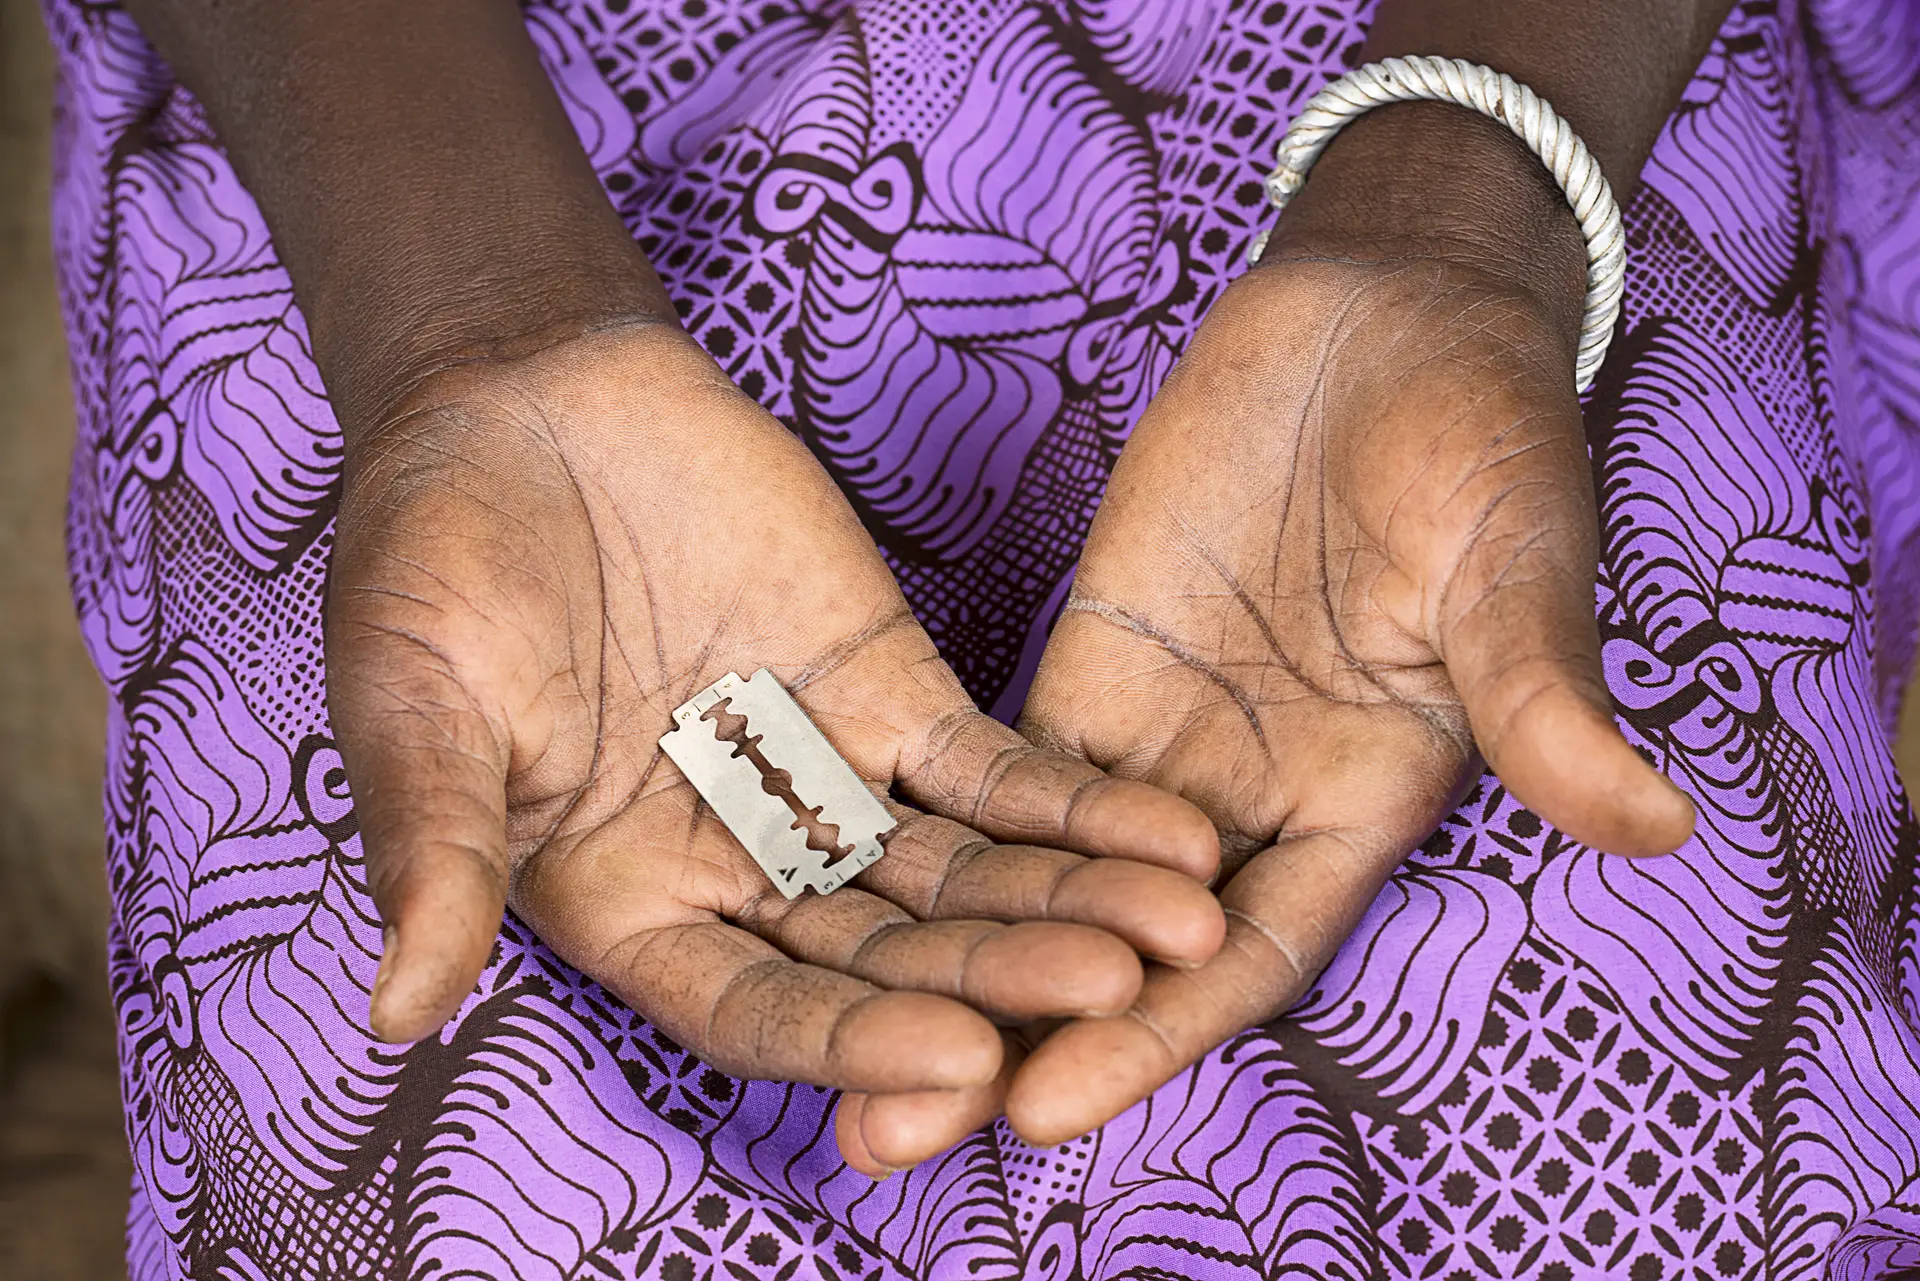 Registados 190 casos de mutilação genital feminina em 2022